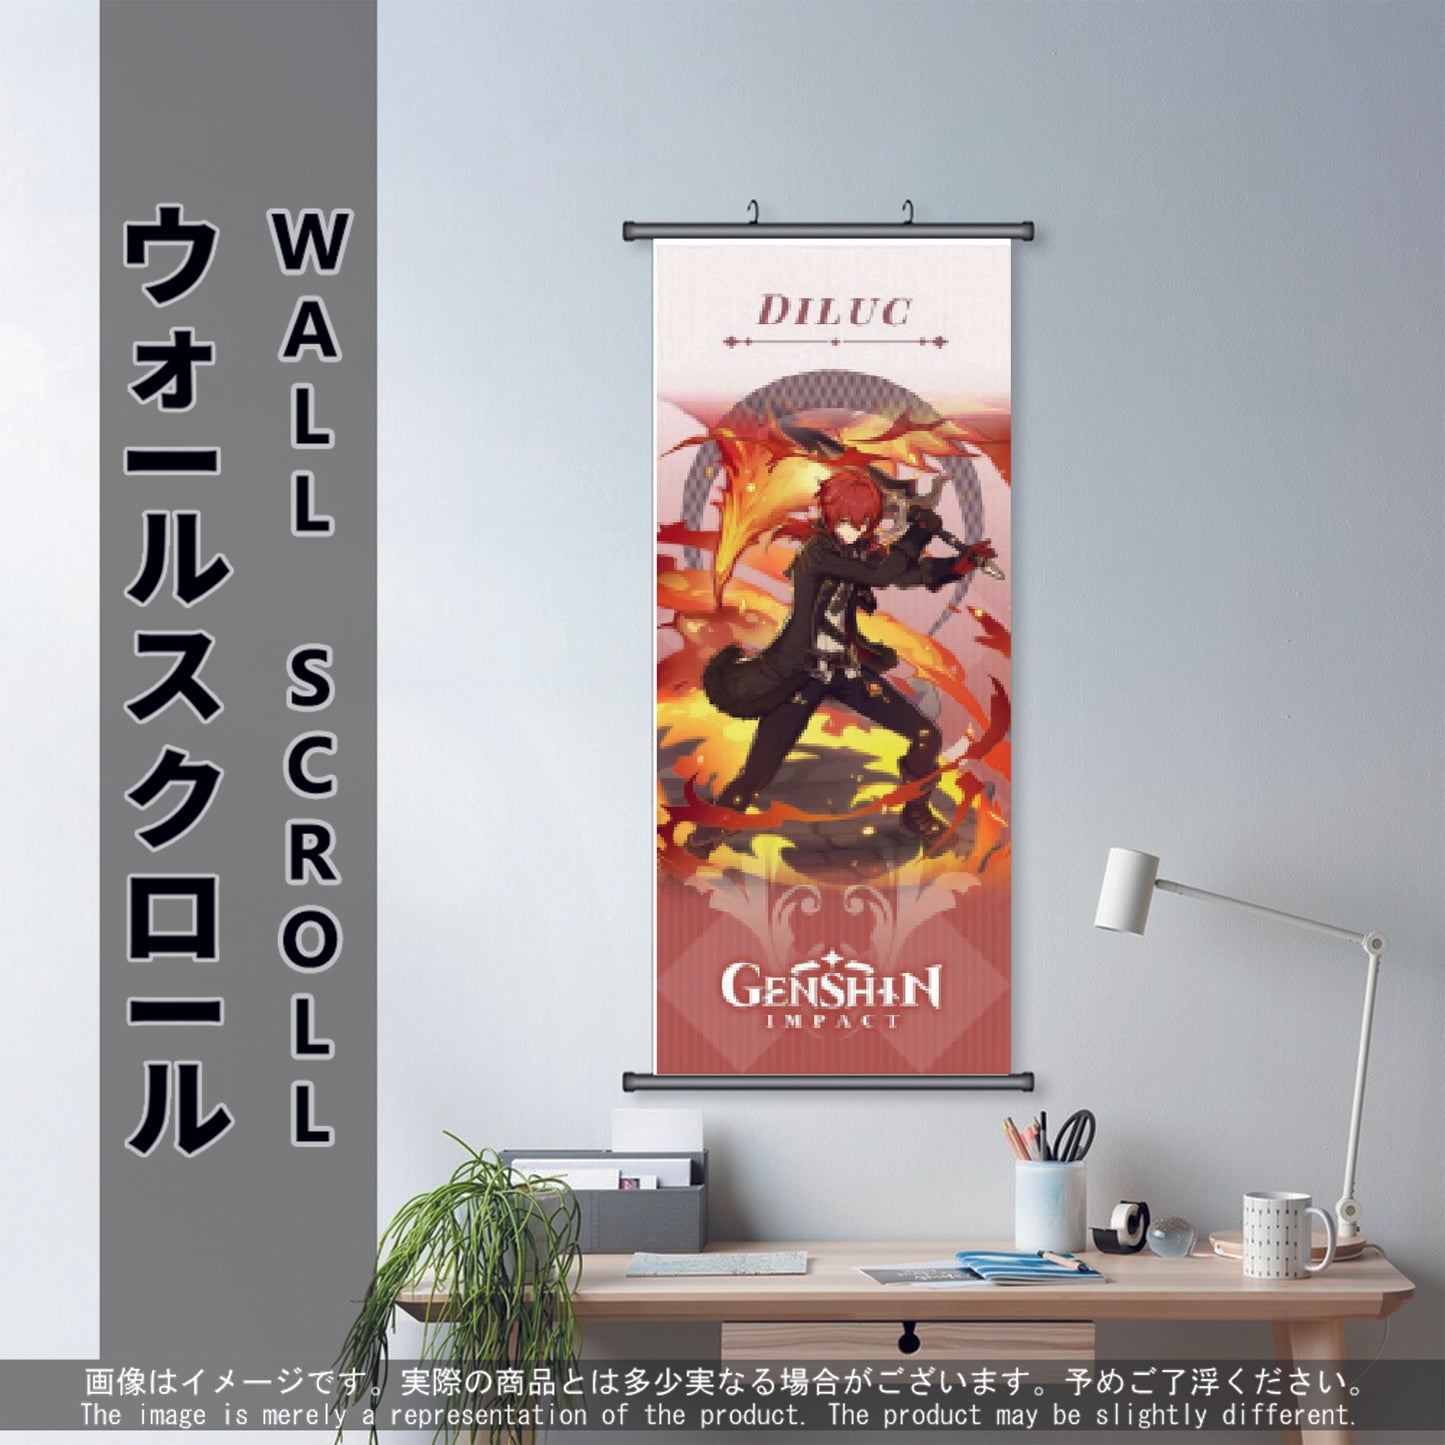 (GSN-PYRO-01) DILUC Genshin Impact Anime Wall Scroll